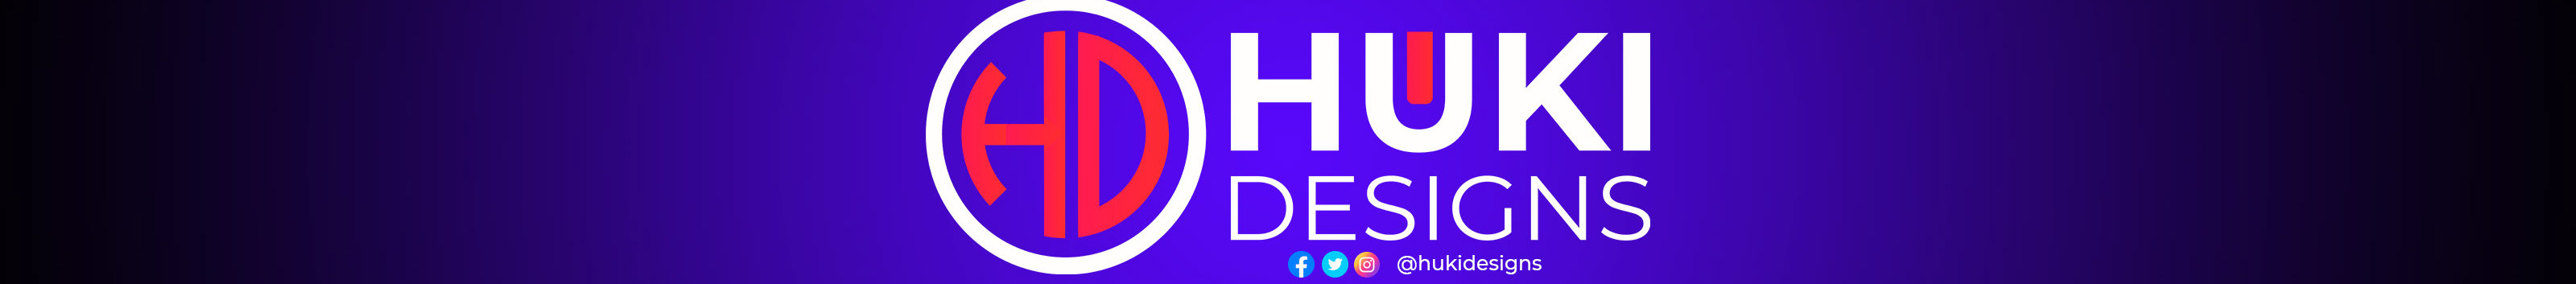 Huki Designs's profile banner